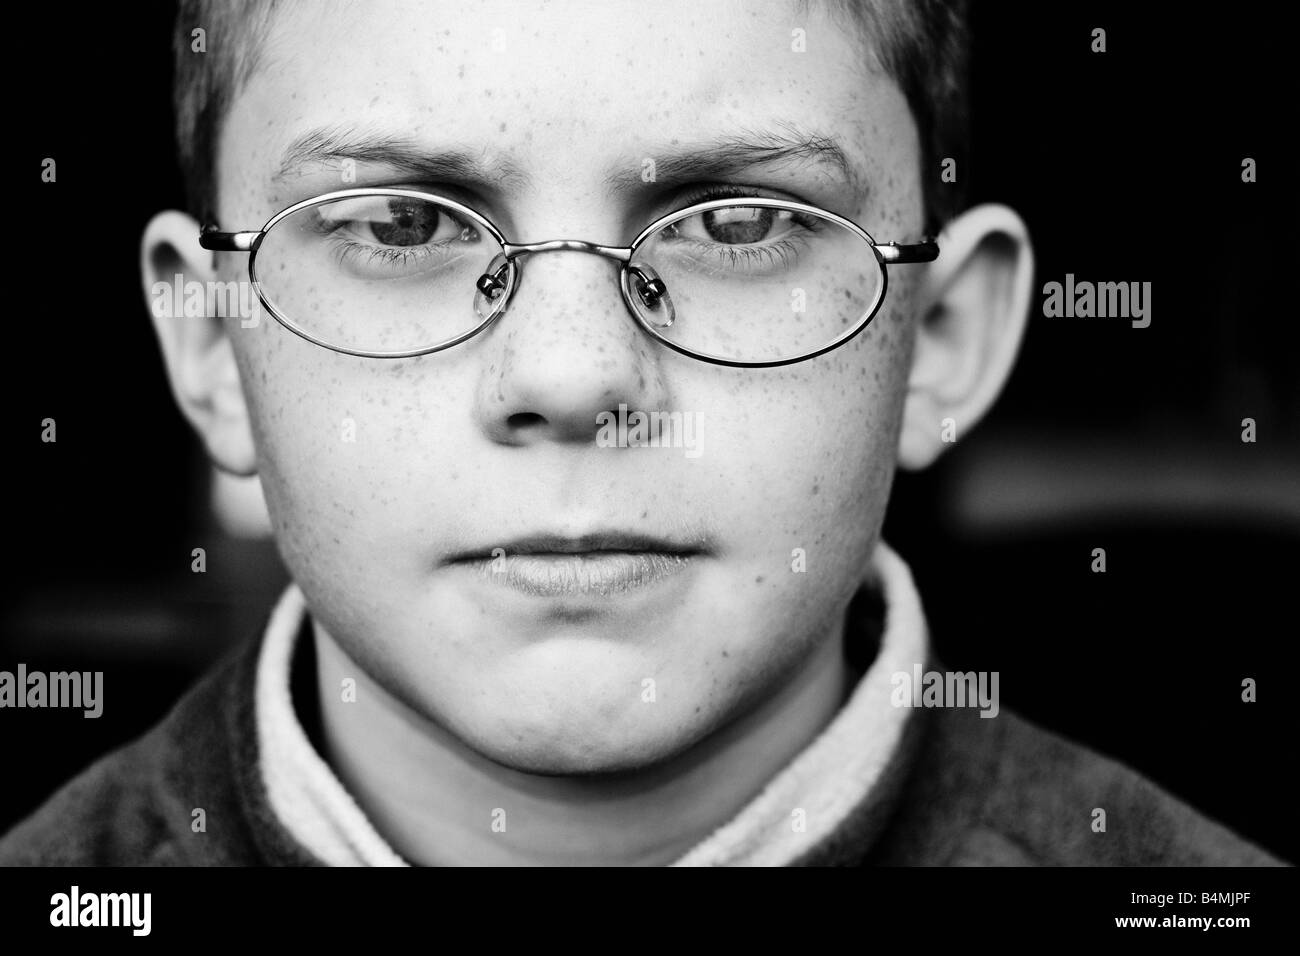 Close up portrait noir et blanc d'un jeune garçon portant des lunettes Banque D'Images